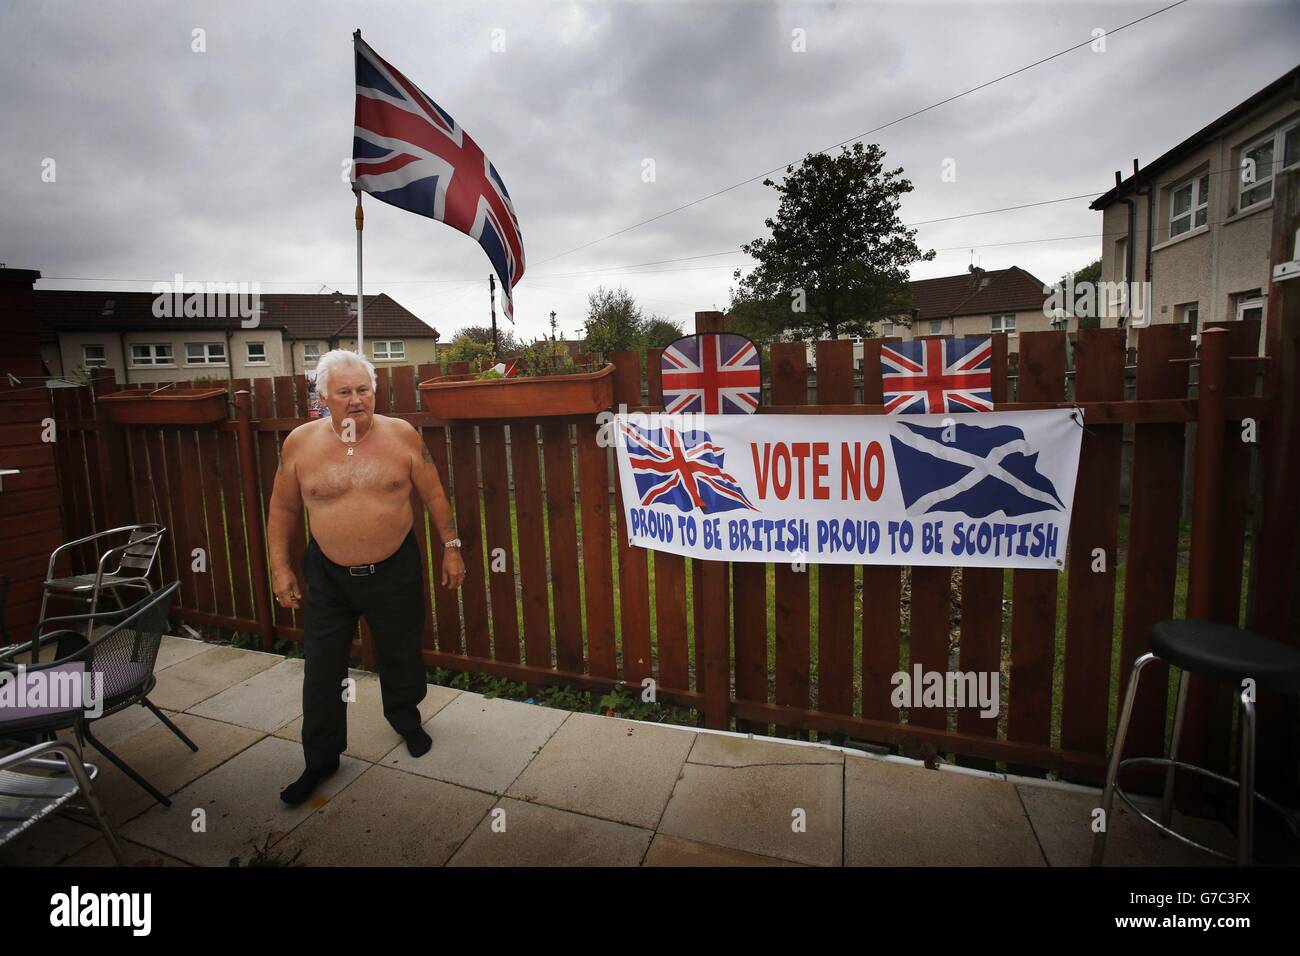 Meglio insieme il sostenitore Walter Barclay nel suo cortile a Glasgow, Scozia, mentre la campagna in vista del referendum per l'indipendenza scozzese entra nei suoi ultimi giorni. Foto Stock